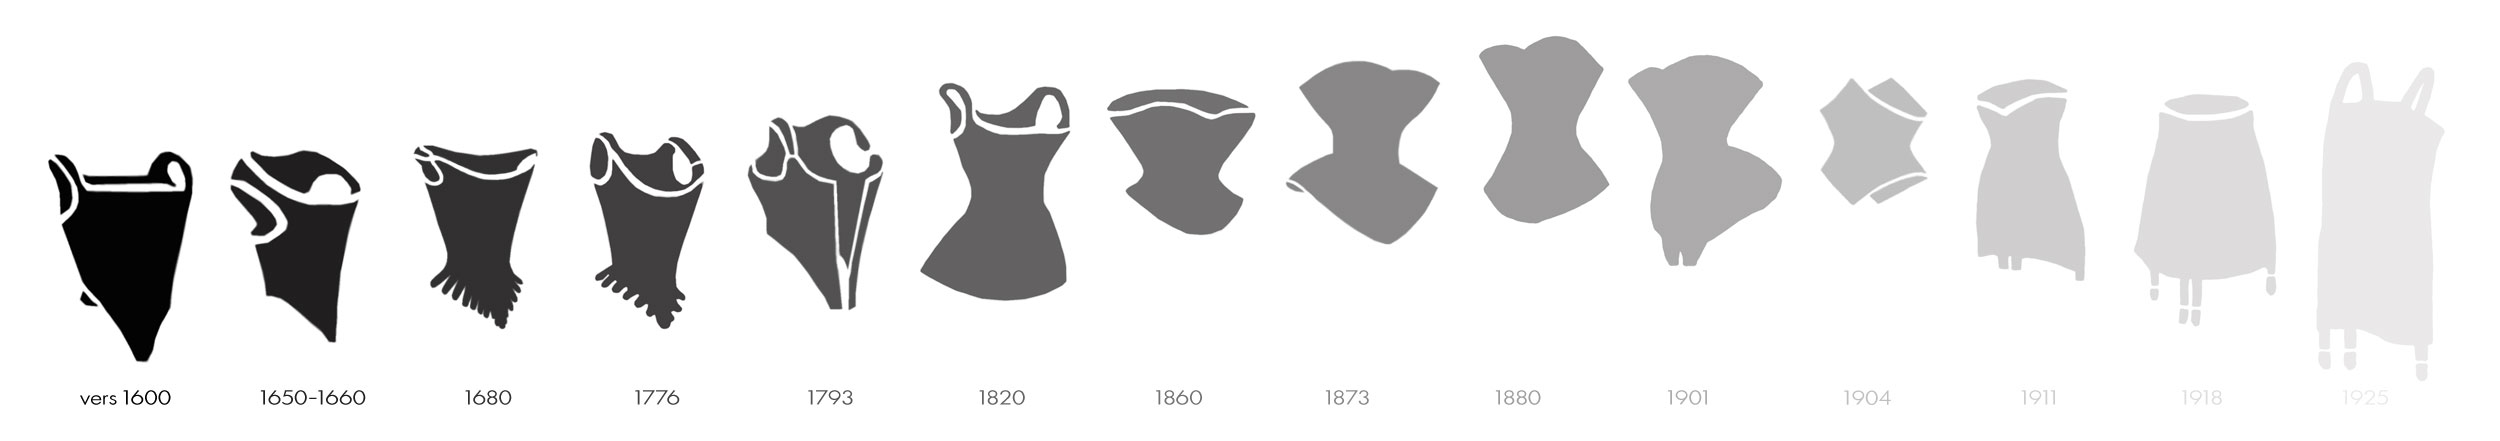 Historique des formes du corset